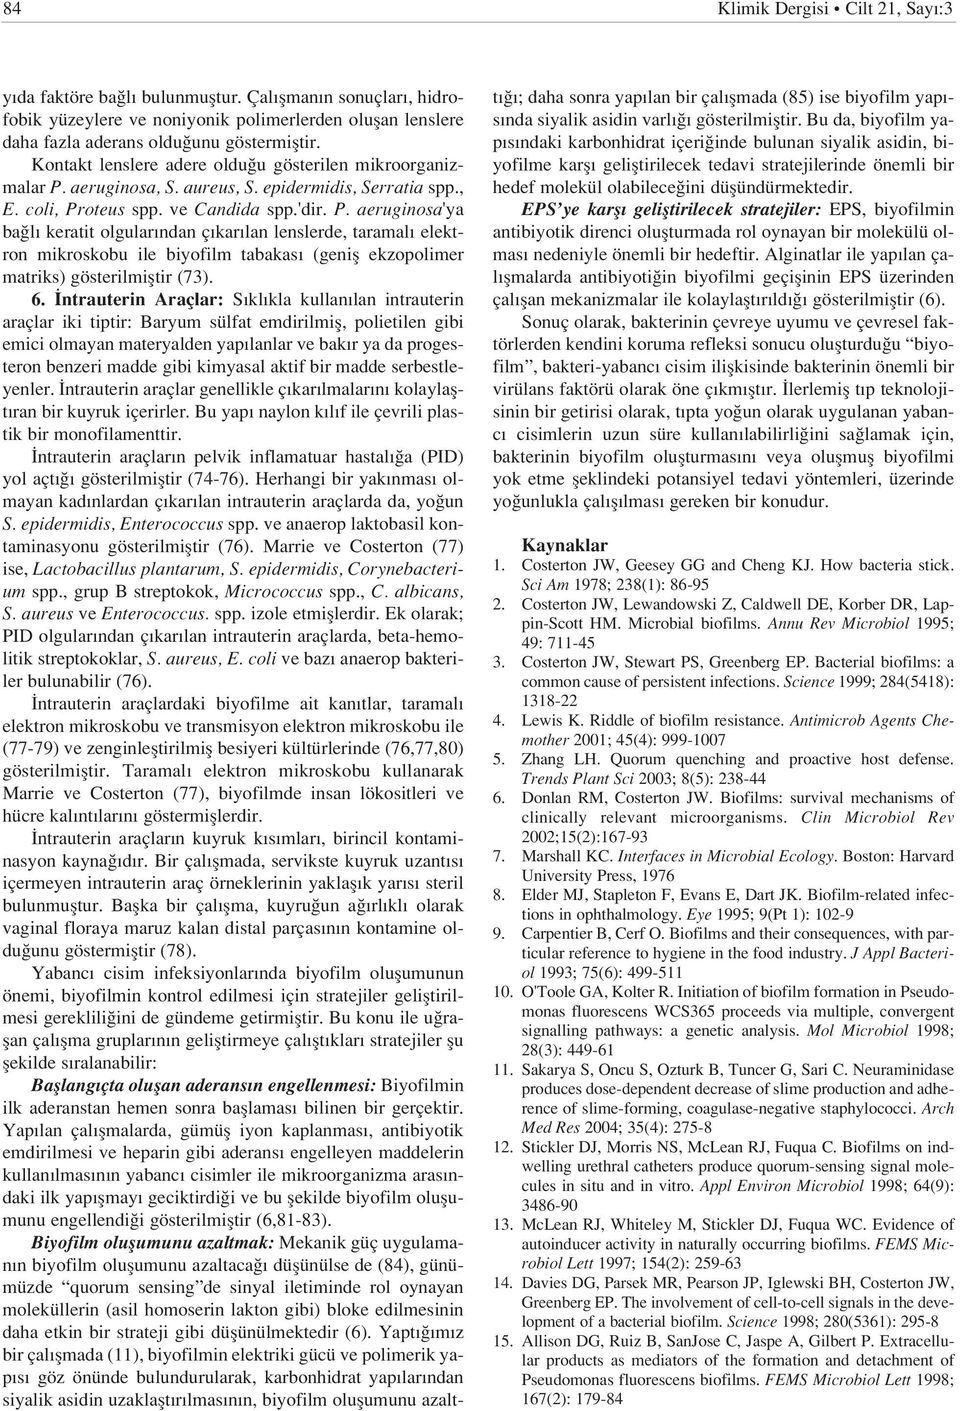 aeruginosa, S. aureus, S. epidermidis, Serratia spp., E. coli, Pr